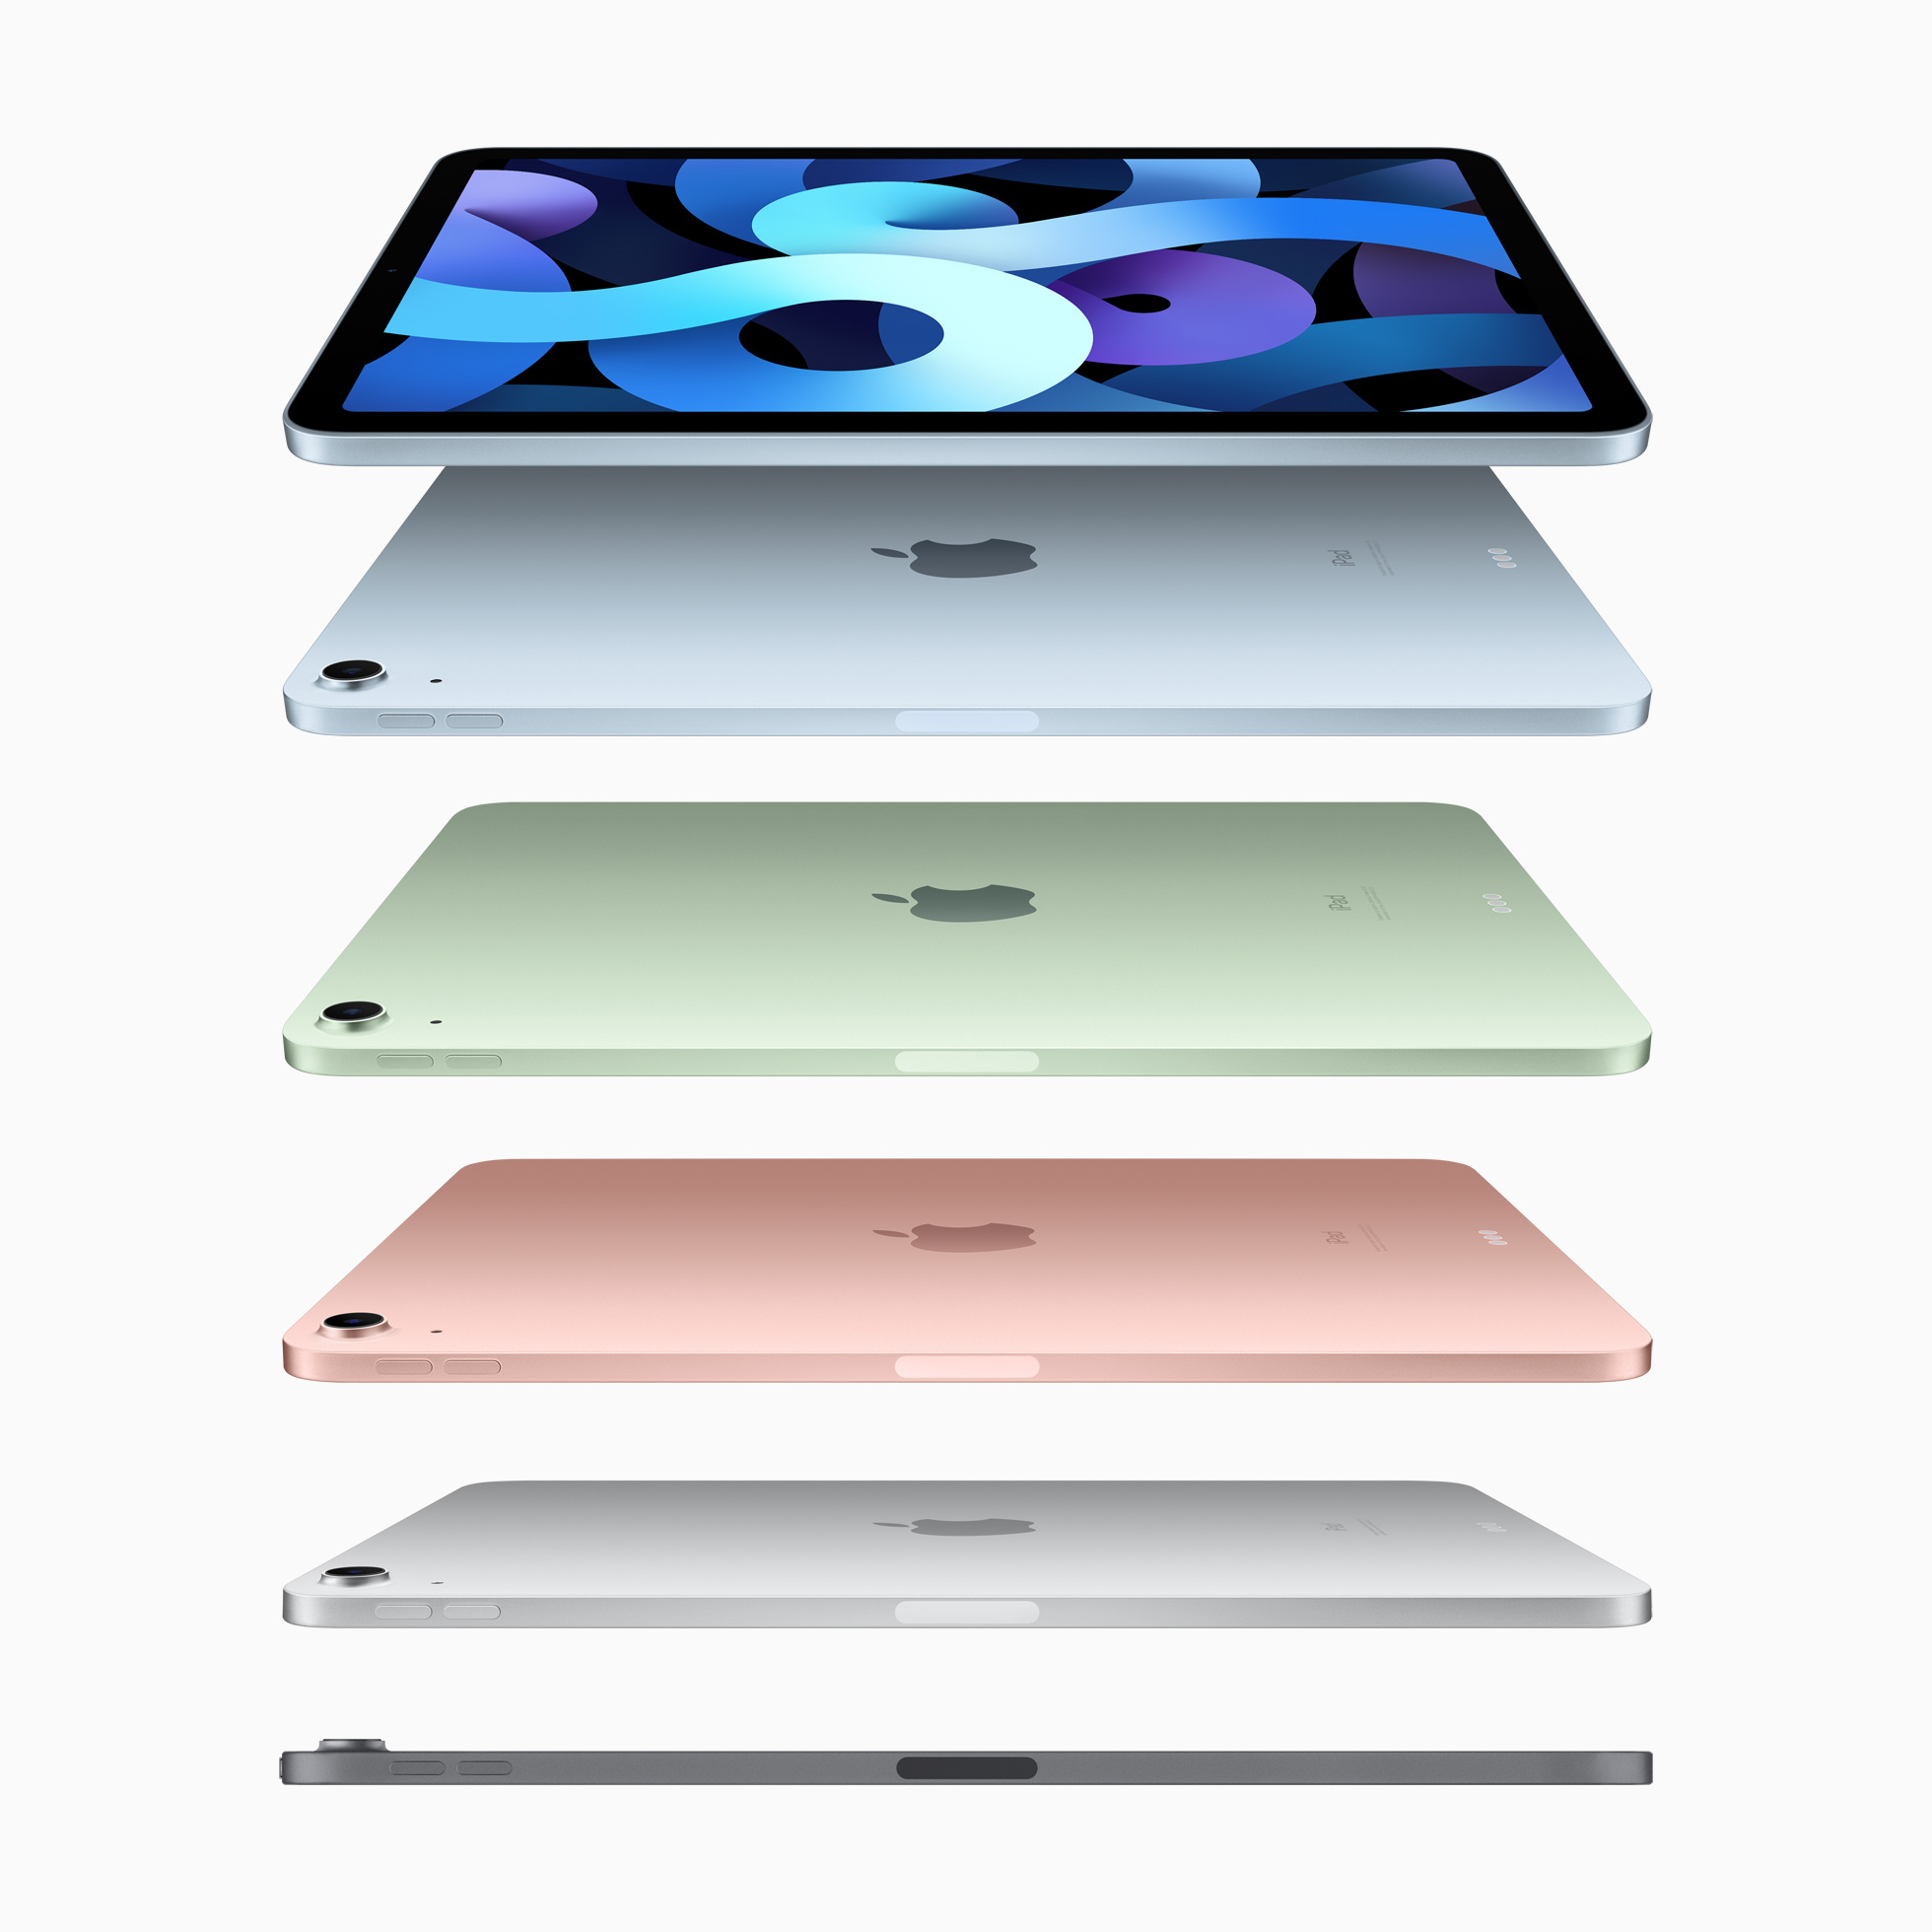 Giá iPad Air 4 tại VN đắt ngang iPad Pro 2018 - Ảnh 1.